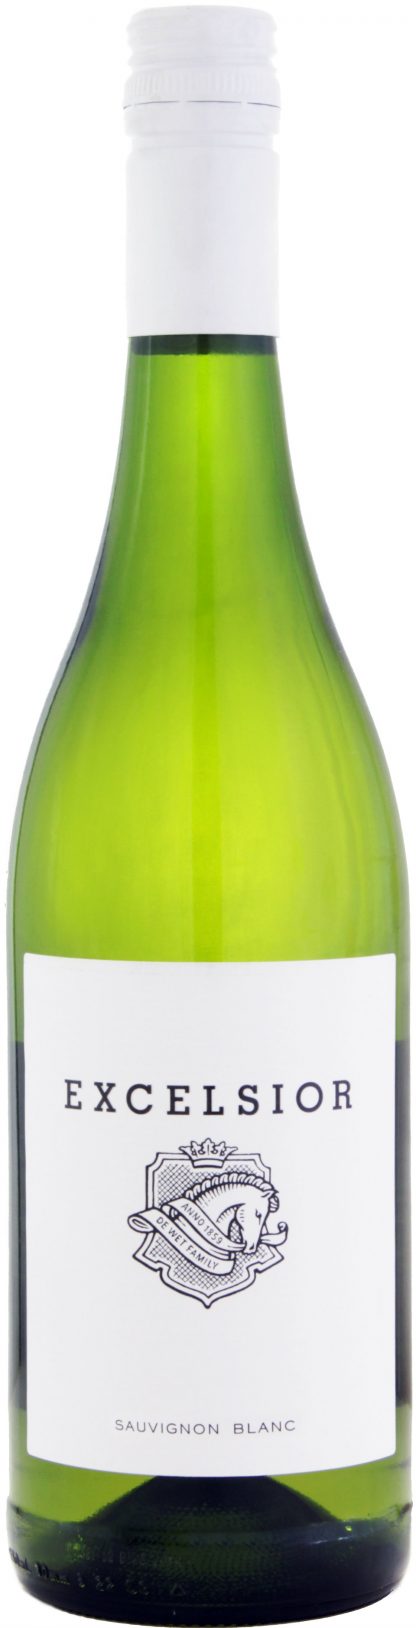 Excelsior - Sauvignon Blanc 2017 75cl Bottle